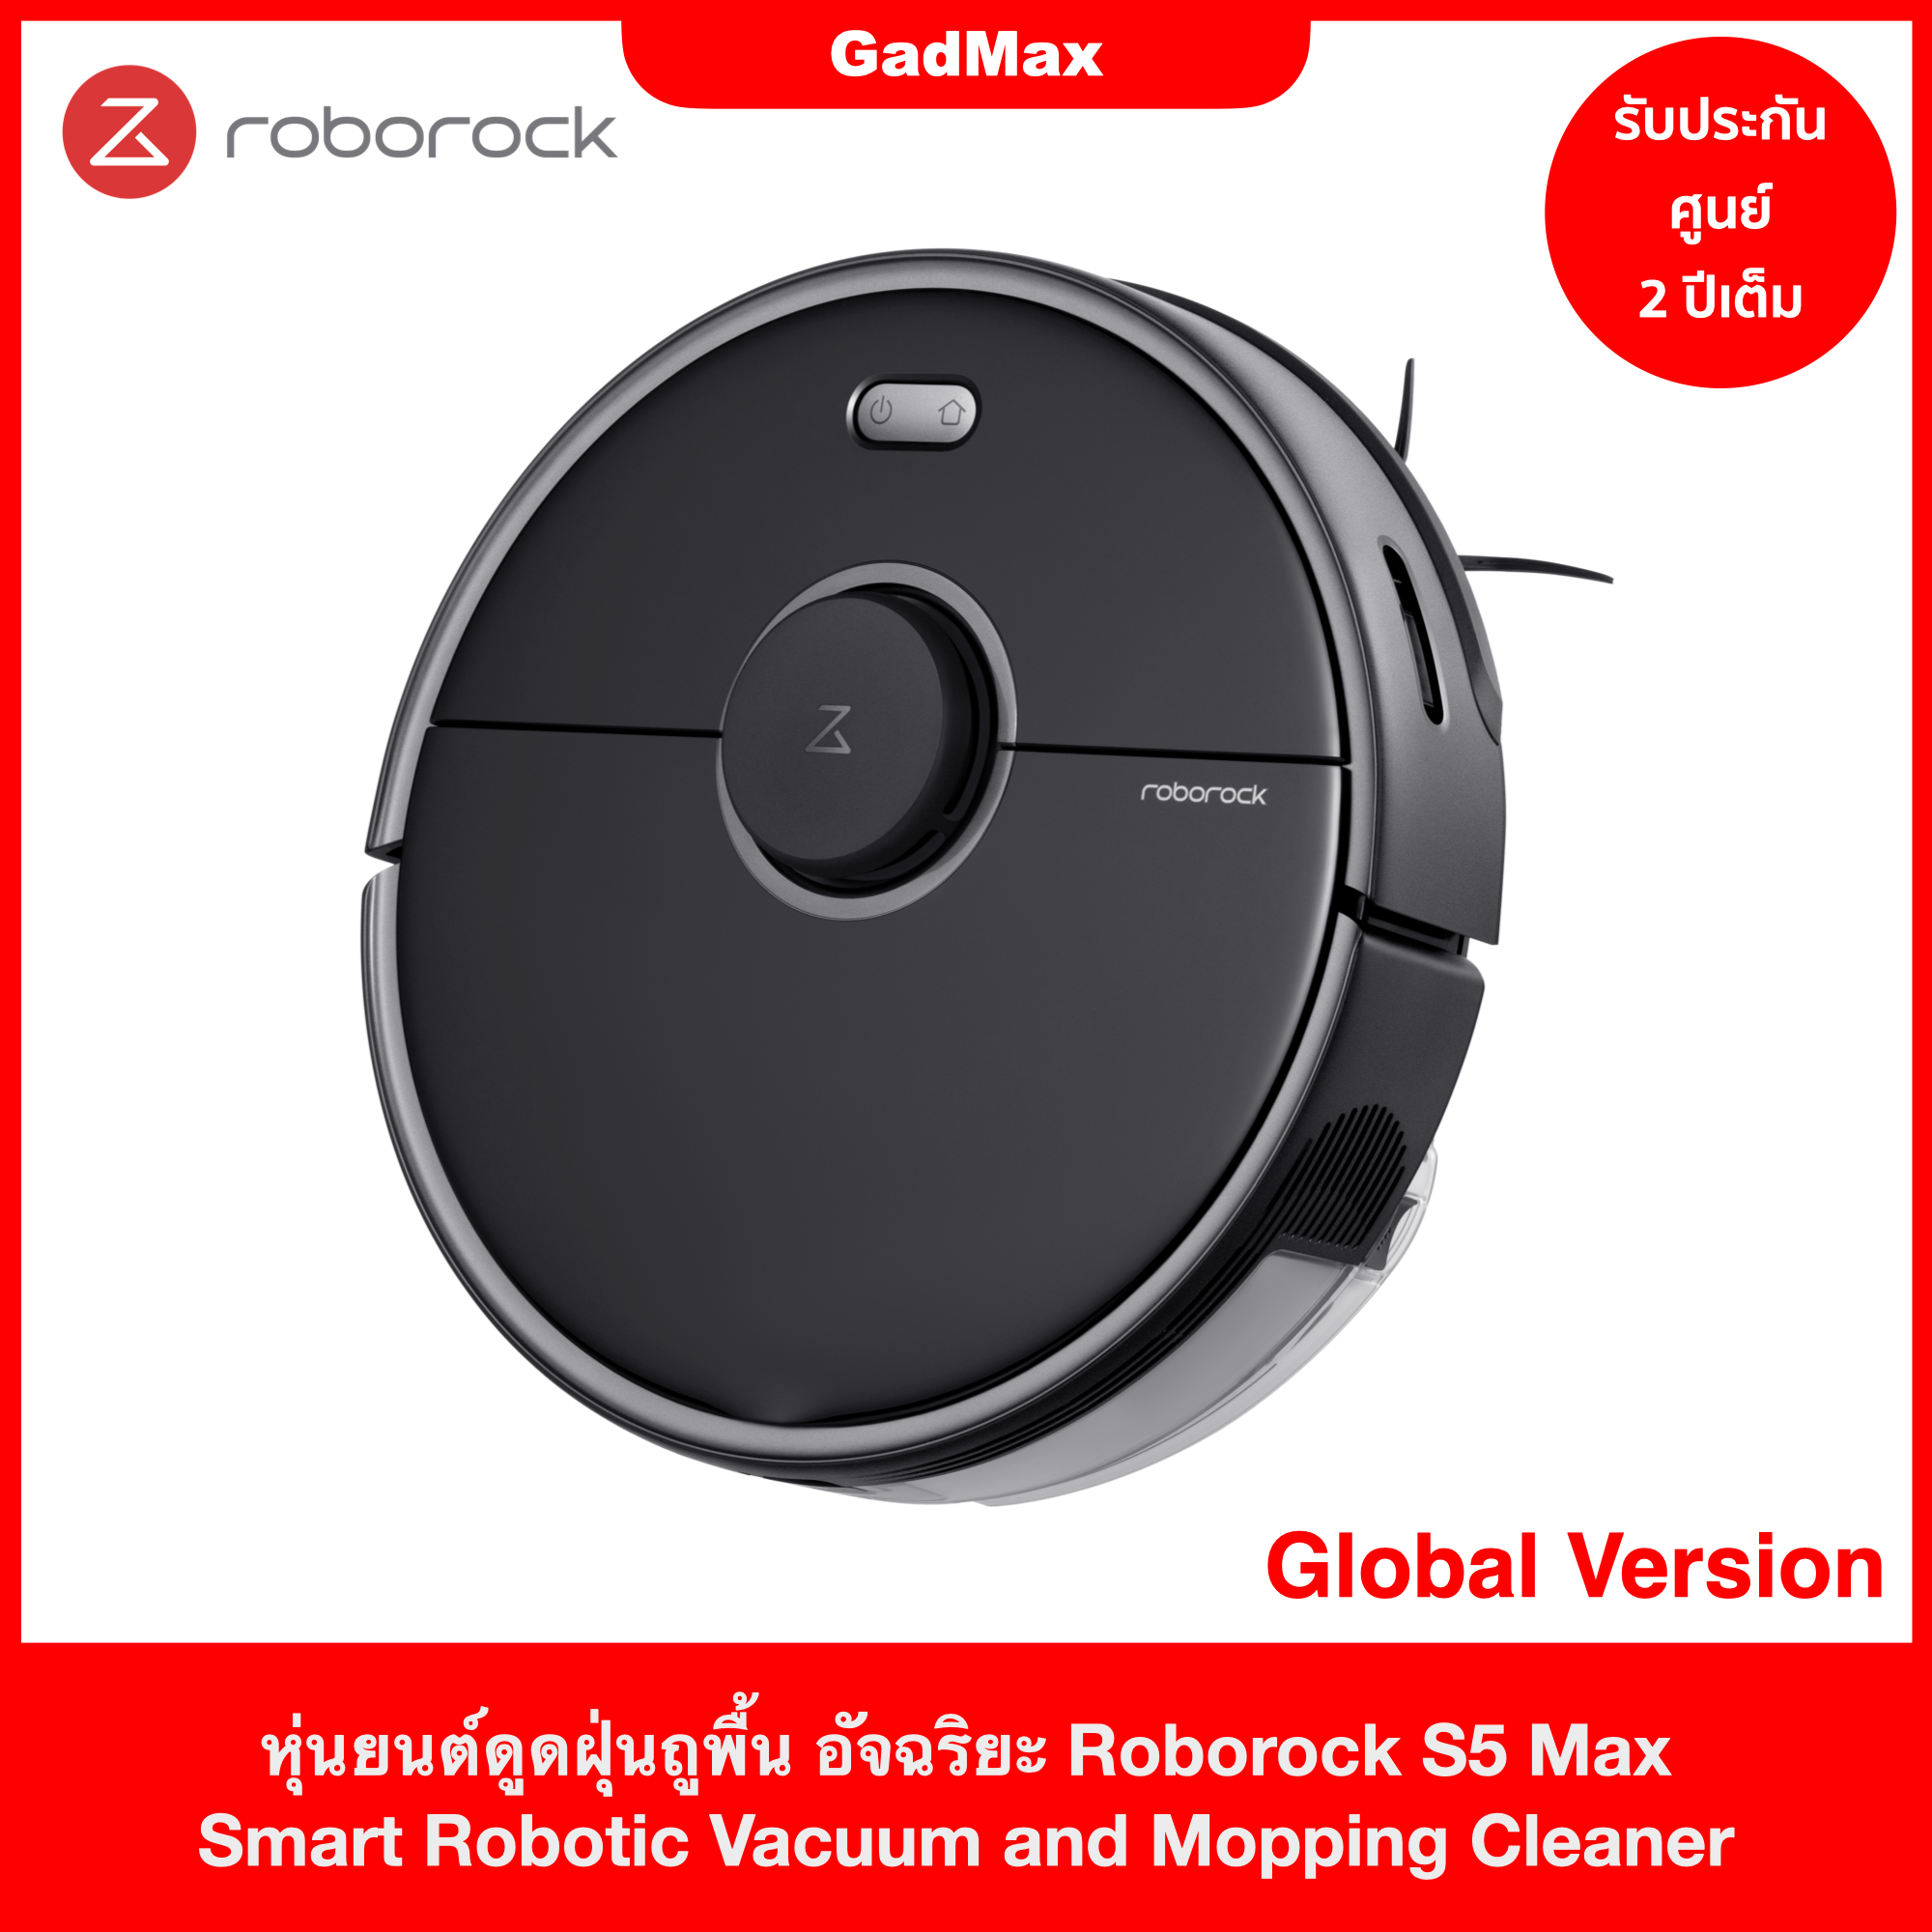 [รับประกัน 2 ปีเต็มกับศูนย์ Roborock Care] หุ่นยนต์ดูดฝุ่น ถูพื้น Roborock S5 MAX รุ่นใหม่ล่าสุด เชื่อมต่อแอพ Roborock ได้ - GadMax